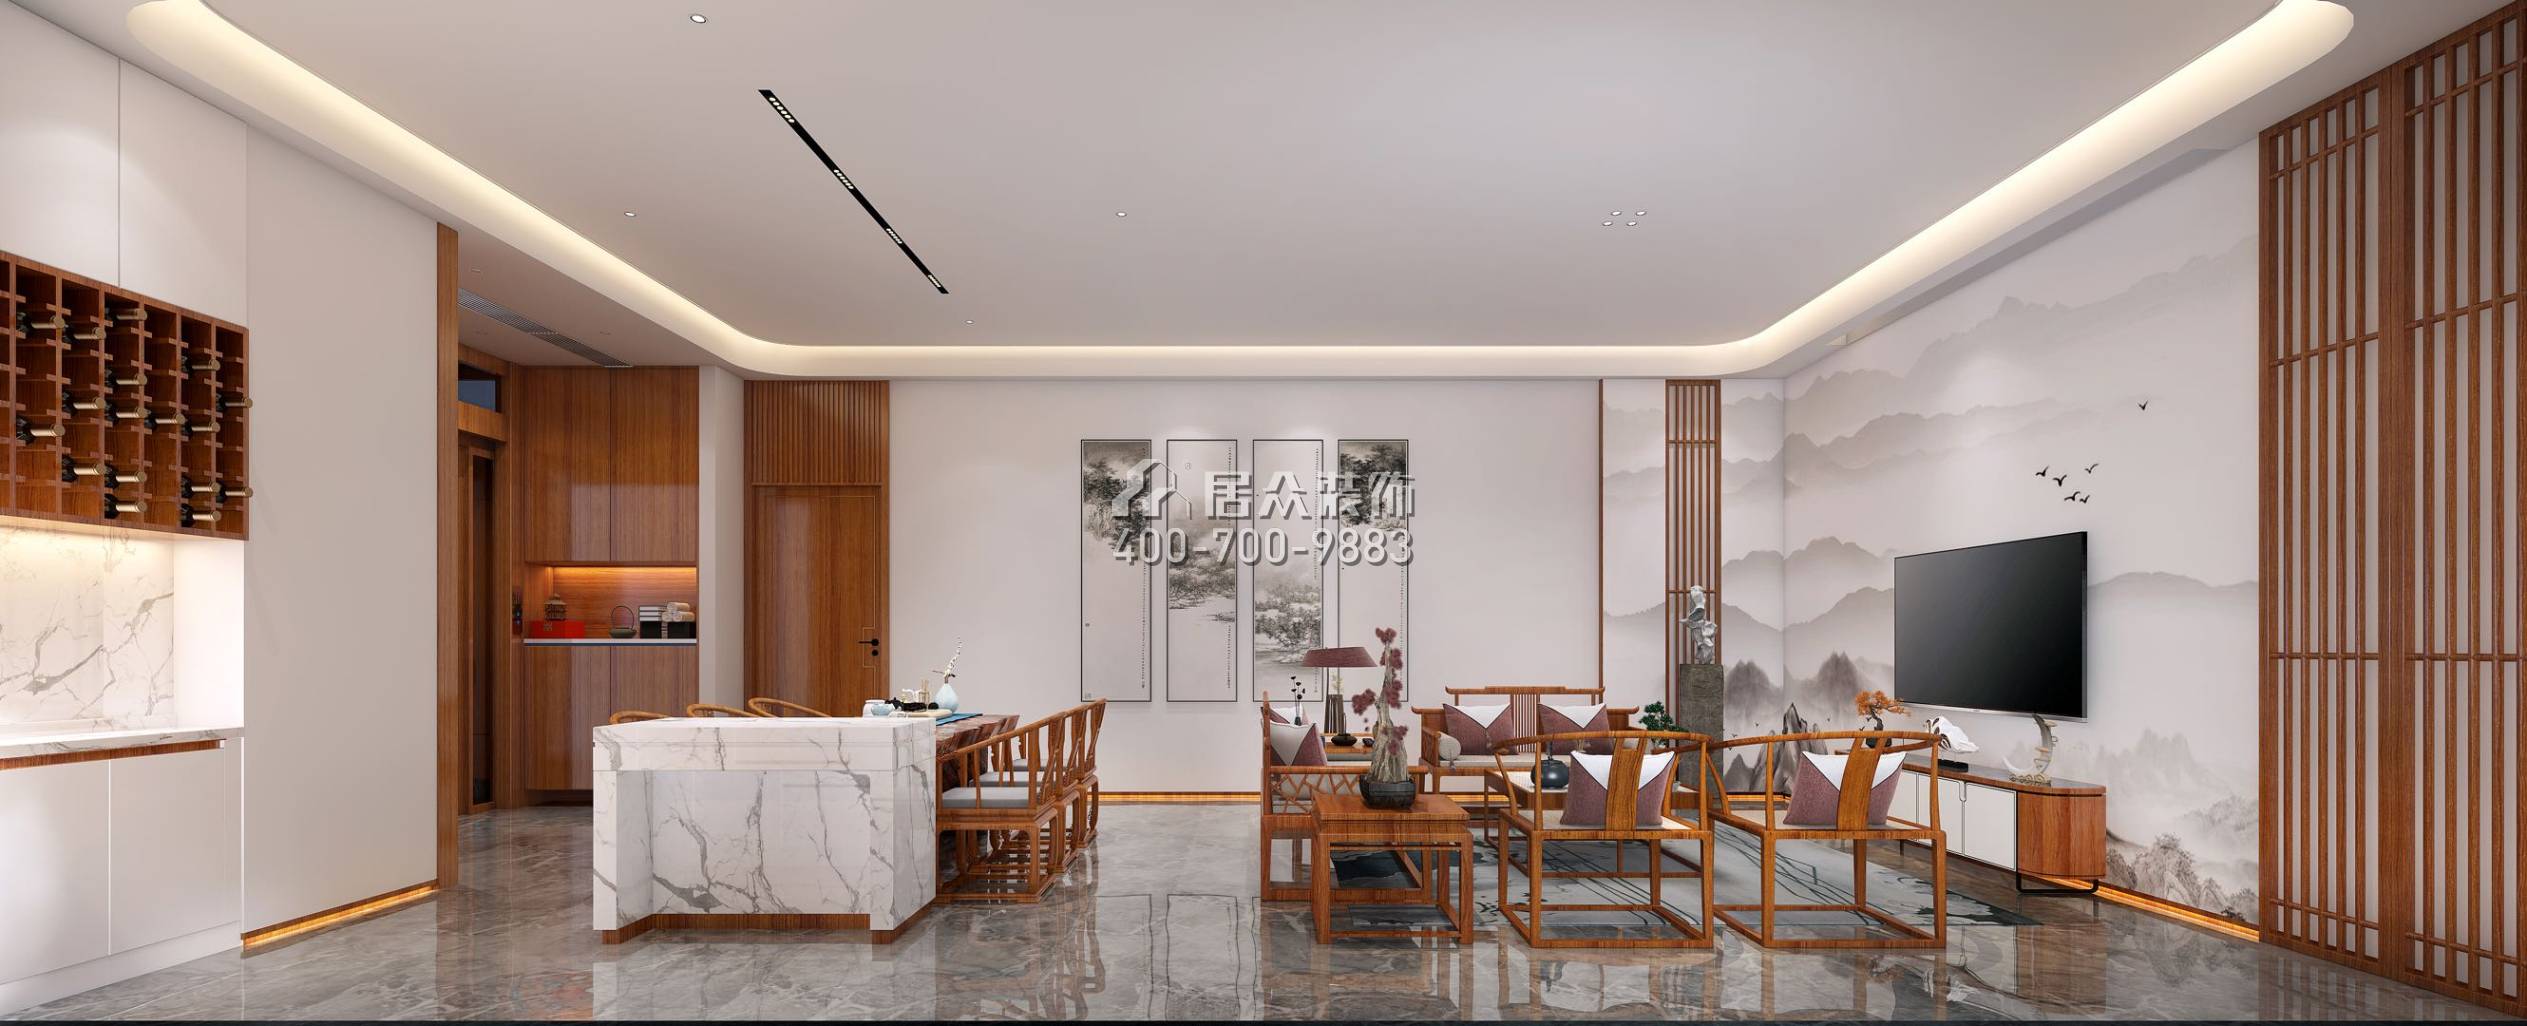 翠湖香山别苑285平方米中式风格复式户型客餐厅一体装修效果图